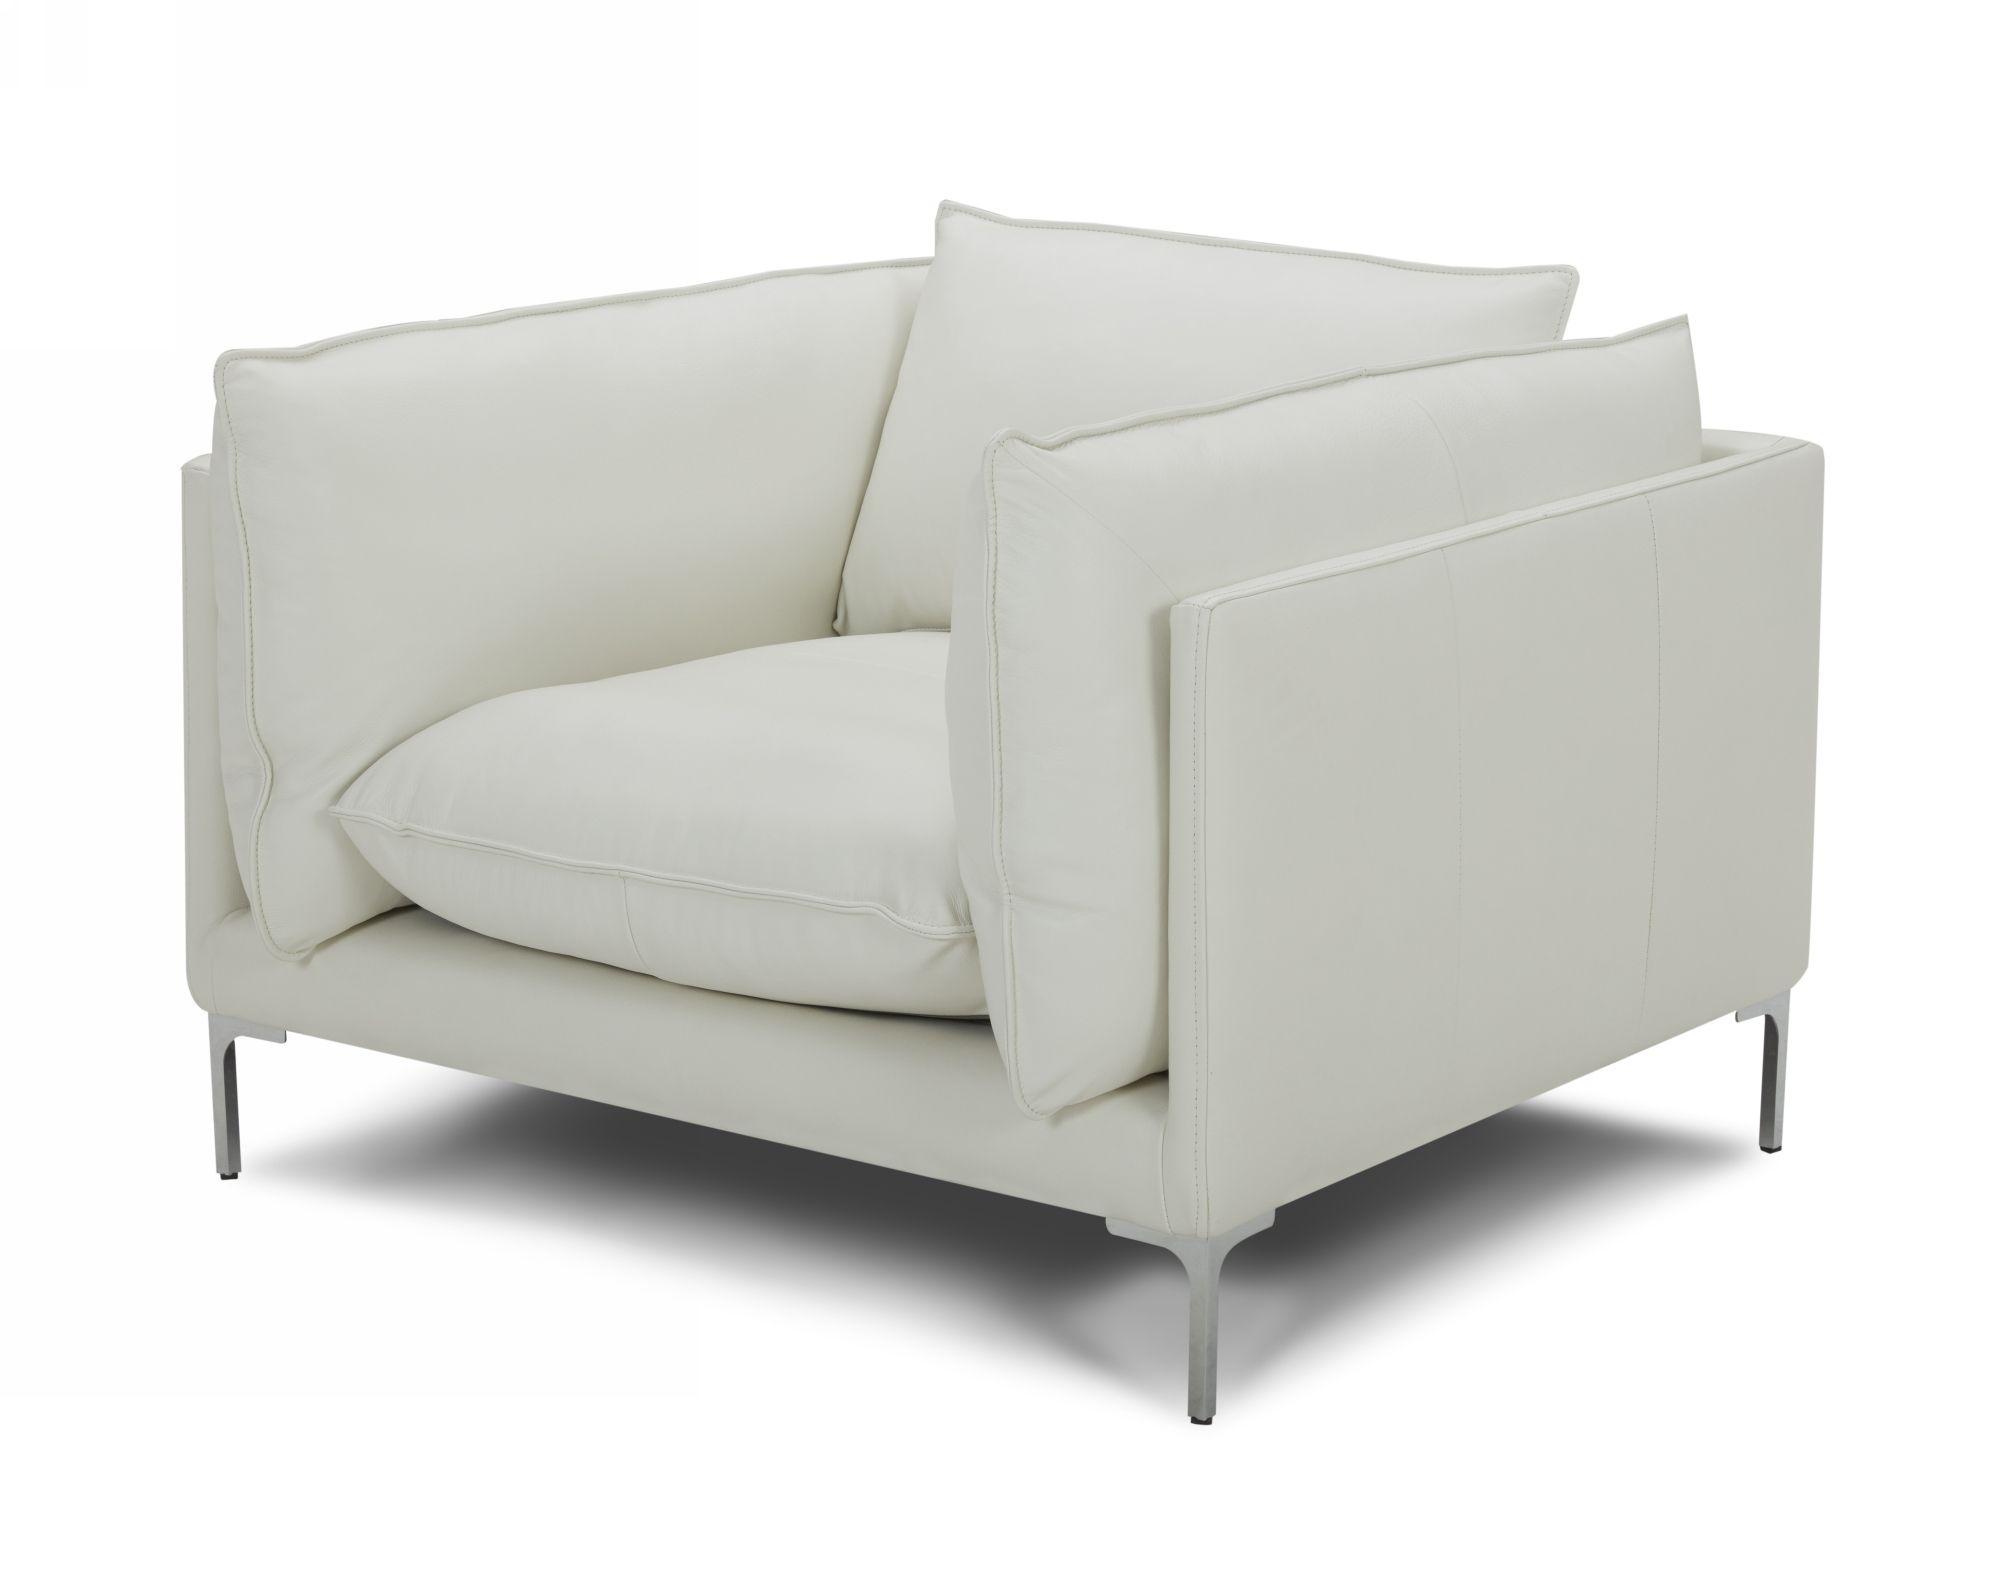 Contemporary, Modern Arm Chair VGKKKF2627-L2927-CHR VGKKKF2627-L2927-CHR in White Full Leather